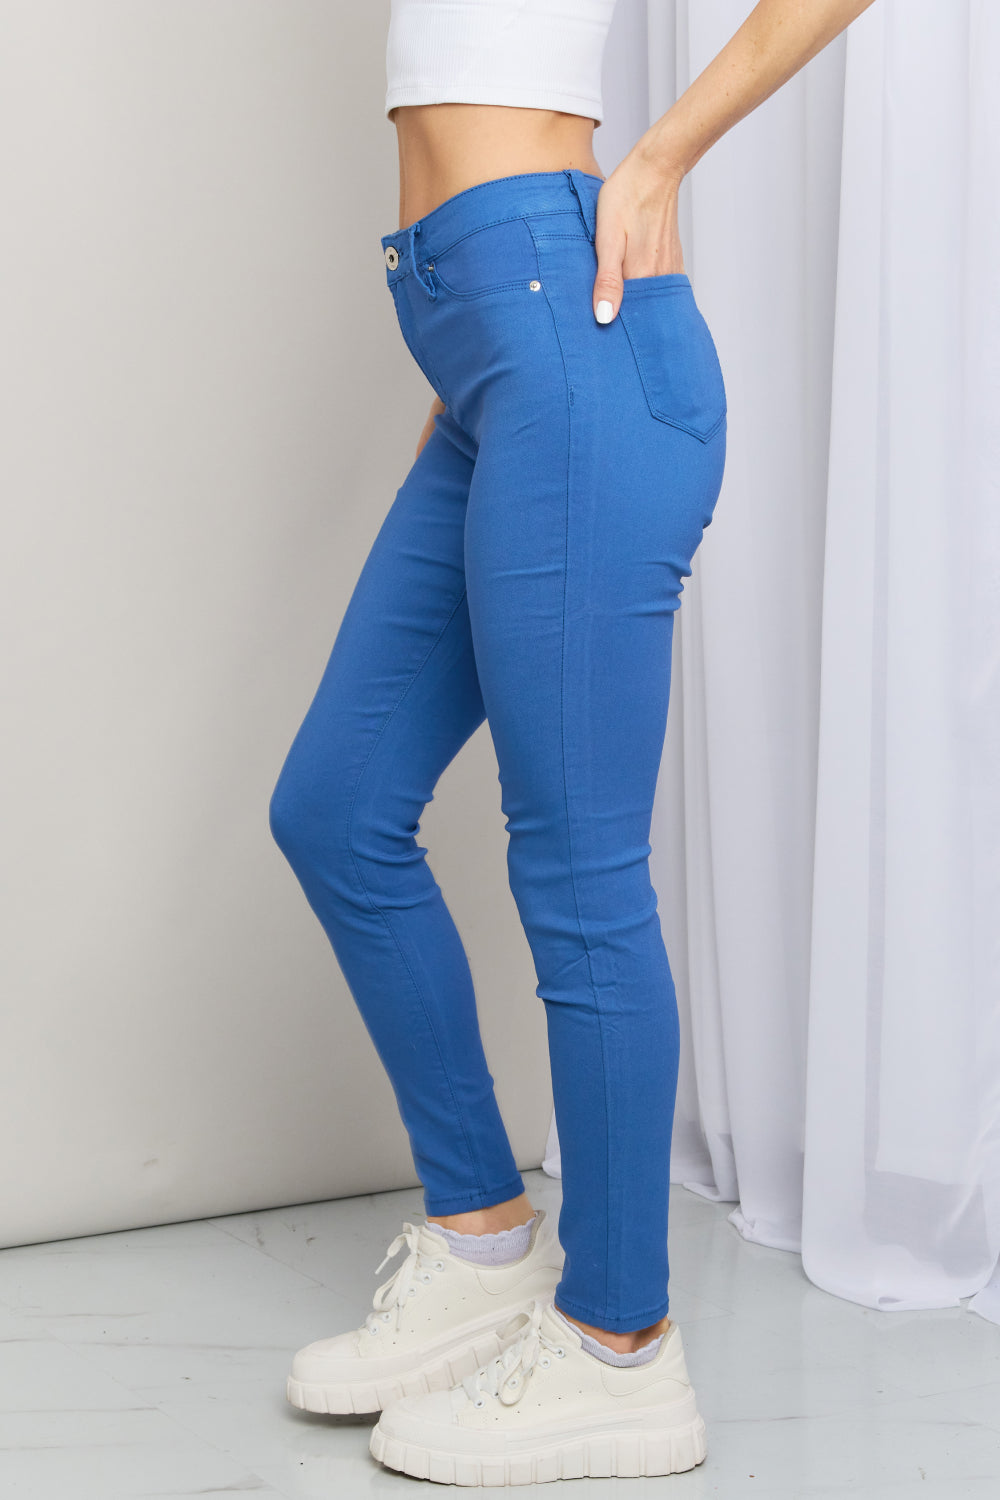 Ymi Hyperstretch Skinny Jeans